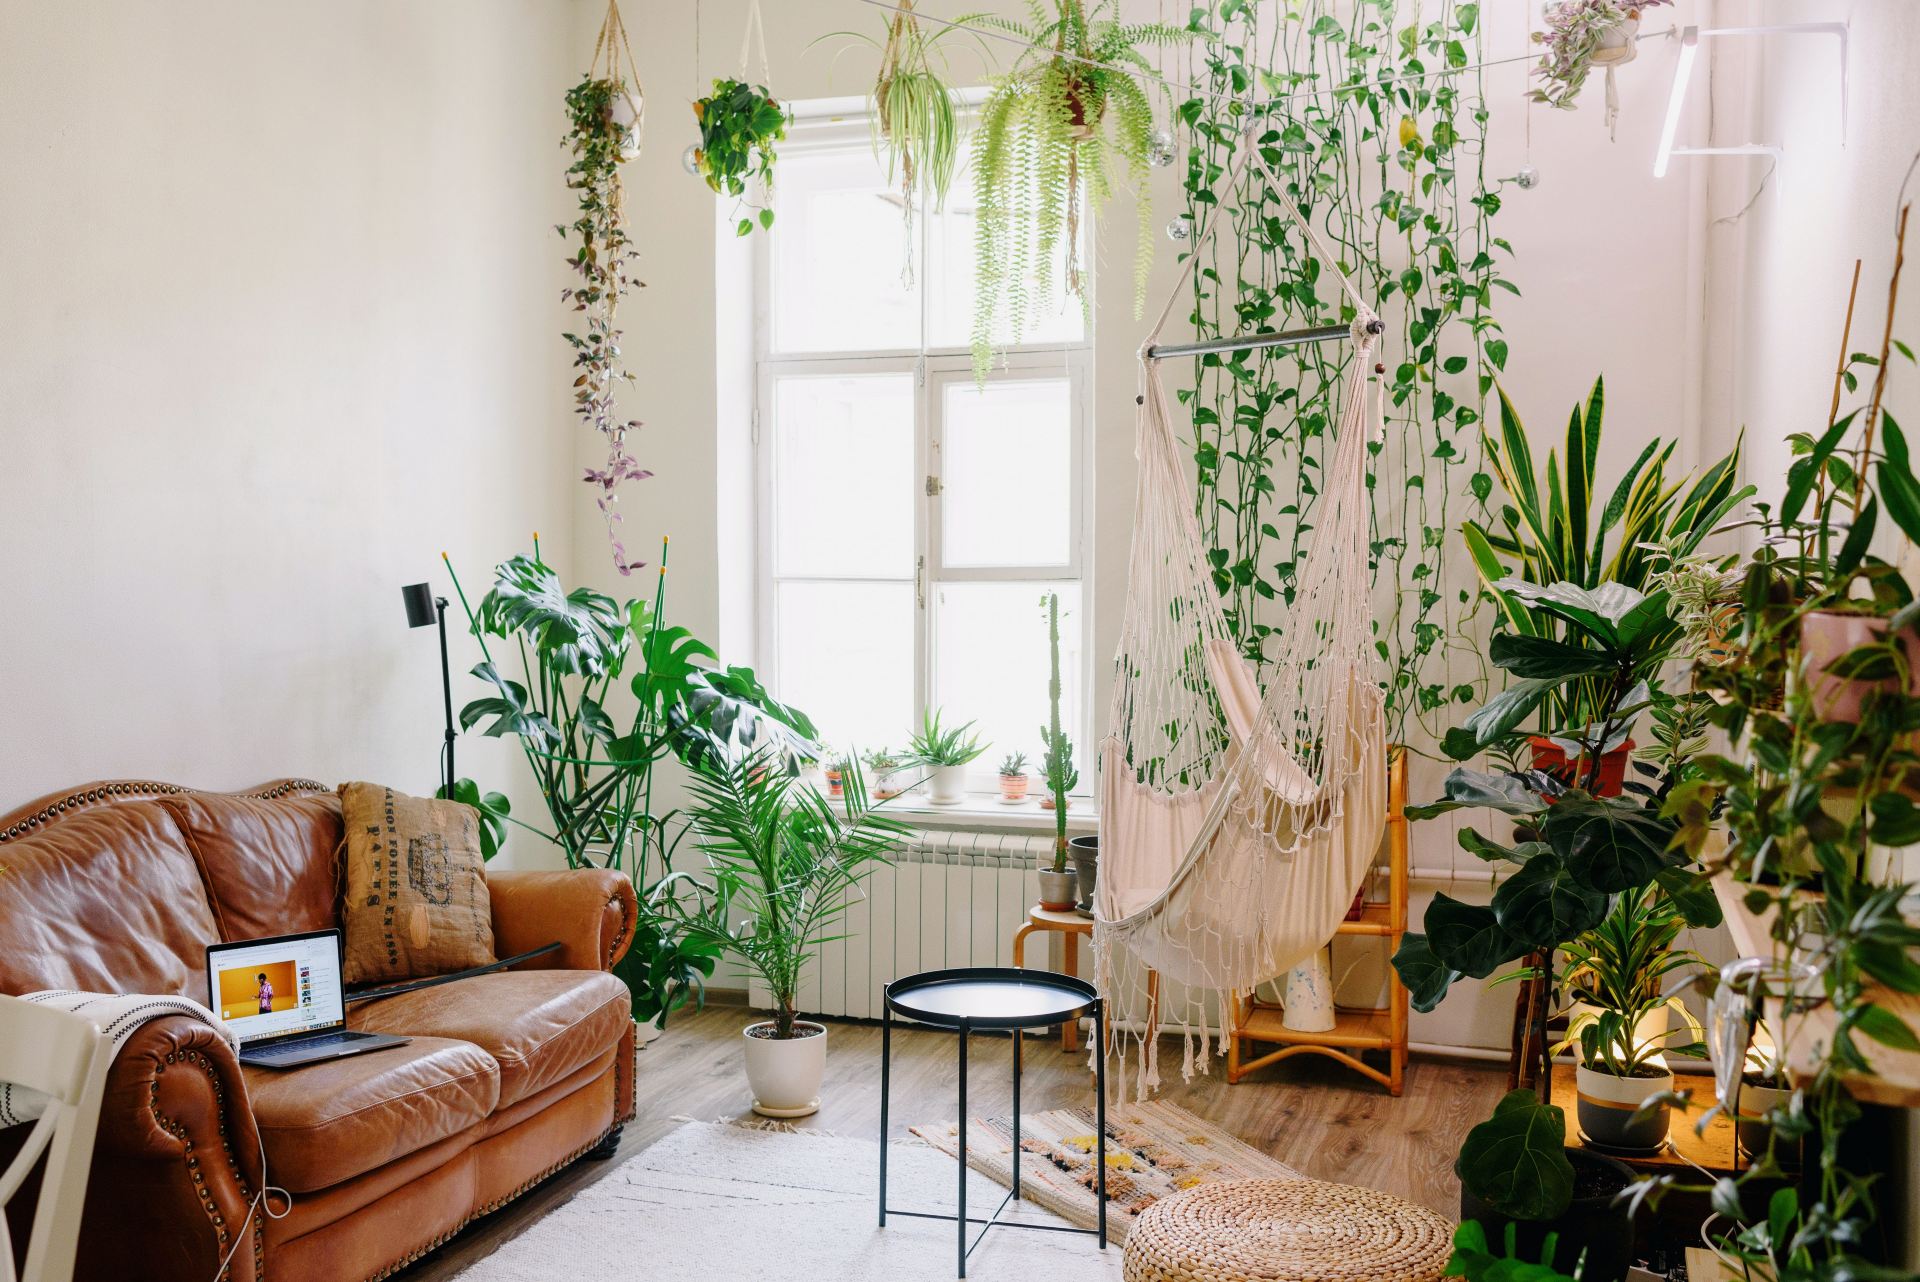 Sala de estar com plantas e sofá de couro caramelo